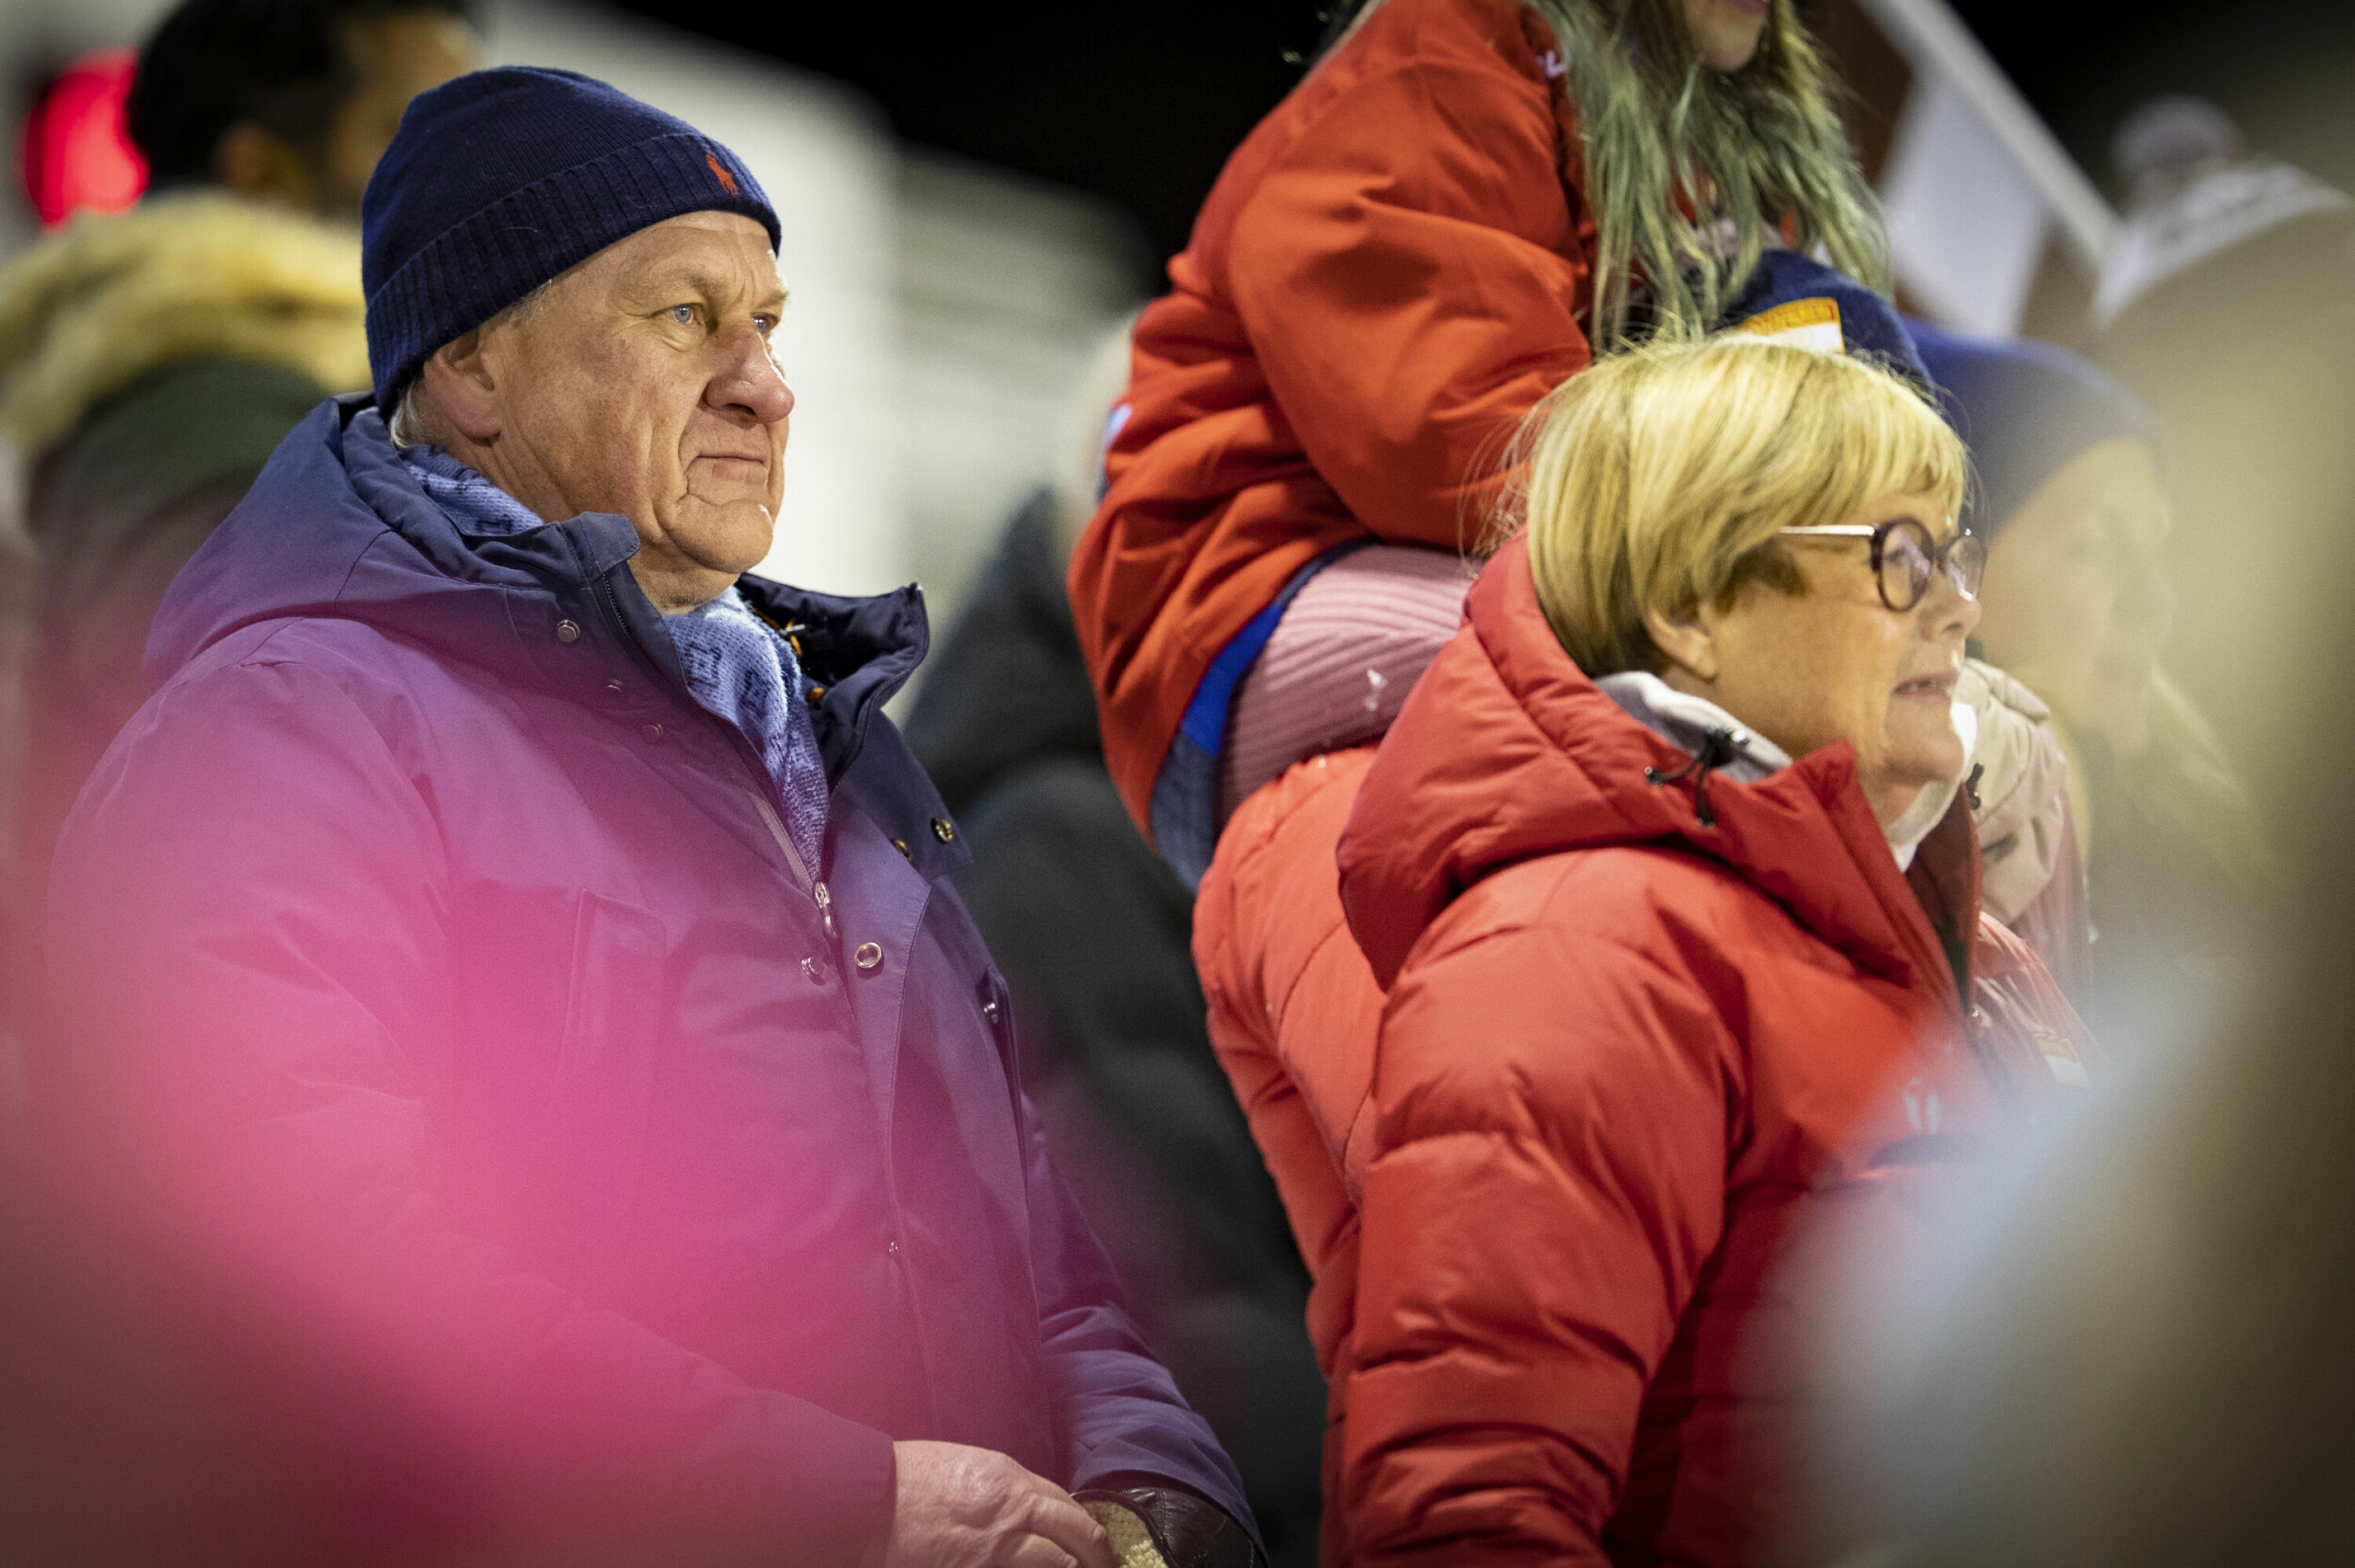 VIP-OPPMØTE: Det var ikke bare bandyforeldre på Konnerud stadion, her ser vi Konnerudværing og Høyres ordførerkandidat i Drammen, Kjell Arne Hermansen, flankert av styreleder i Konnerud idrettslag og Høyre-politiker Kristin Ørmen Johnsen.